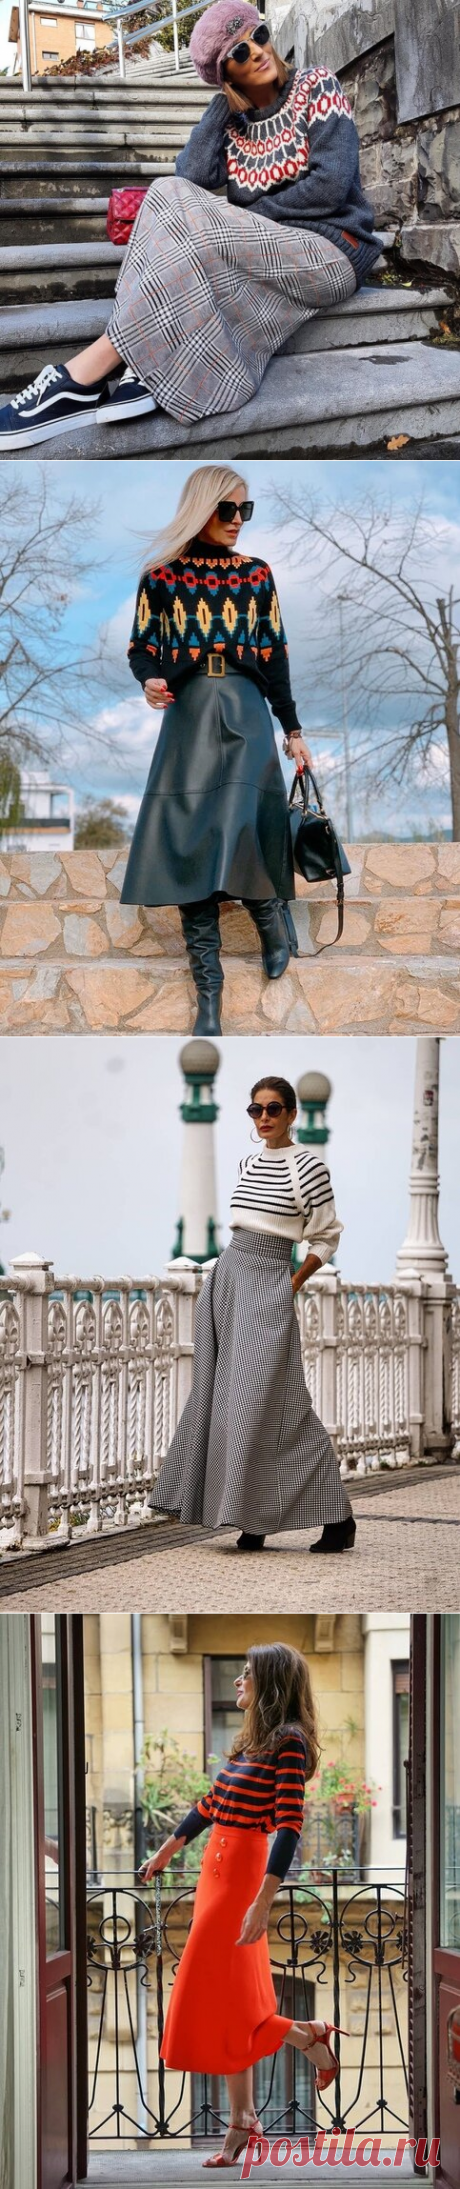 Как не выглядеть простоватой в юбке со свитером: сочетания, помогающие модным блогерам быть стильными | До и после 50-ти | Яндекс Дзен